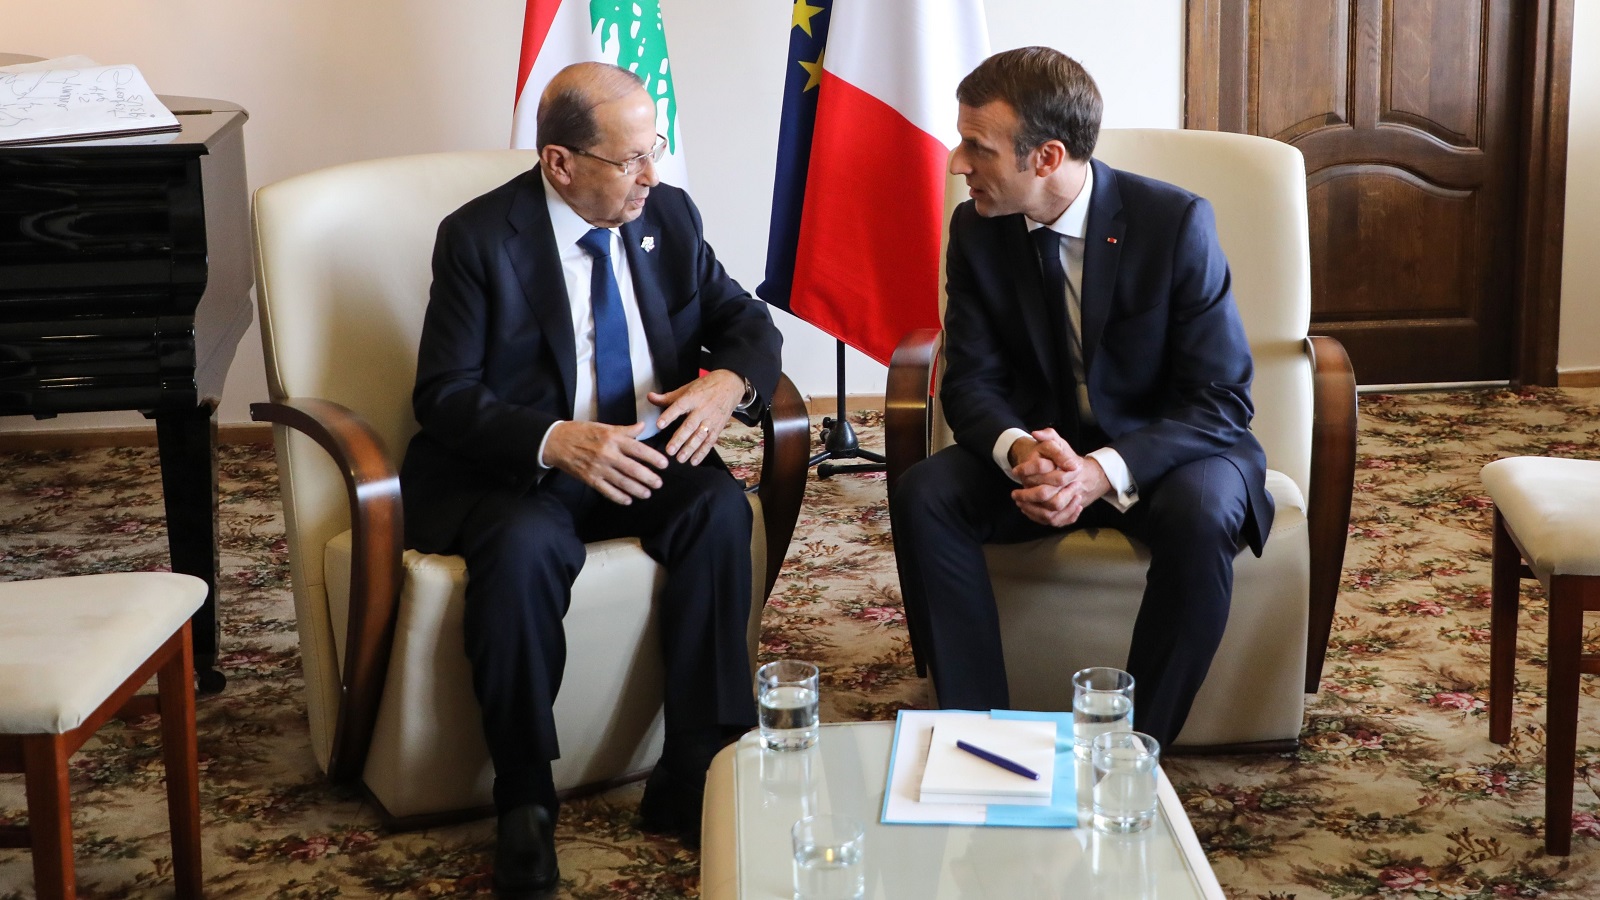 الحدث اللبناني وصمت فرنسا: غضب من فساد السلطة